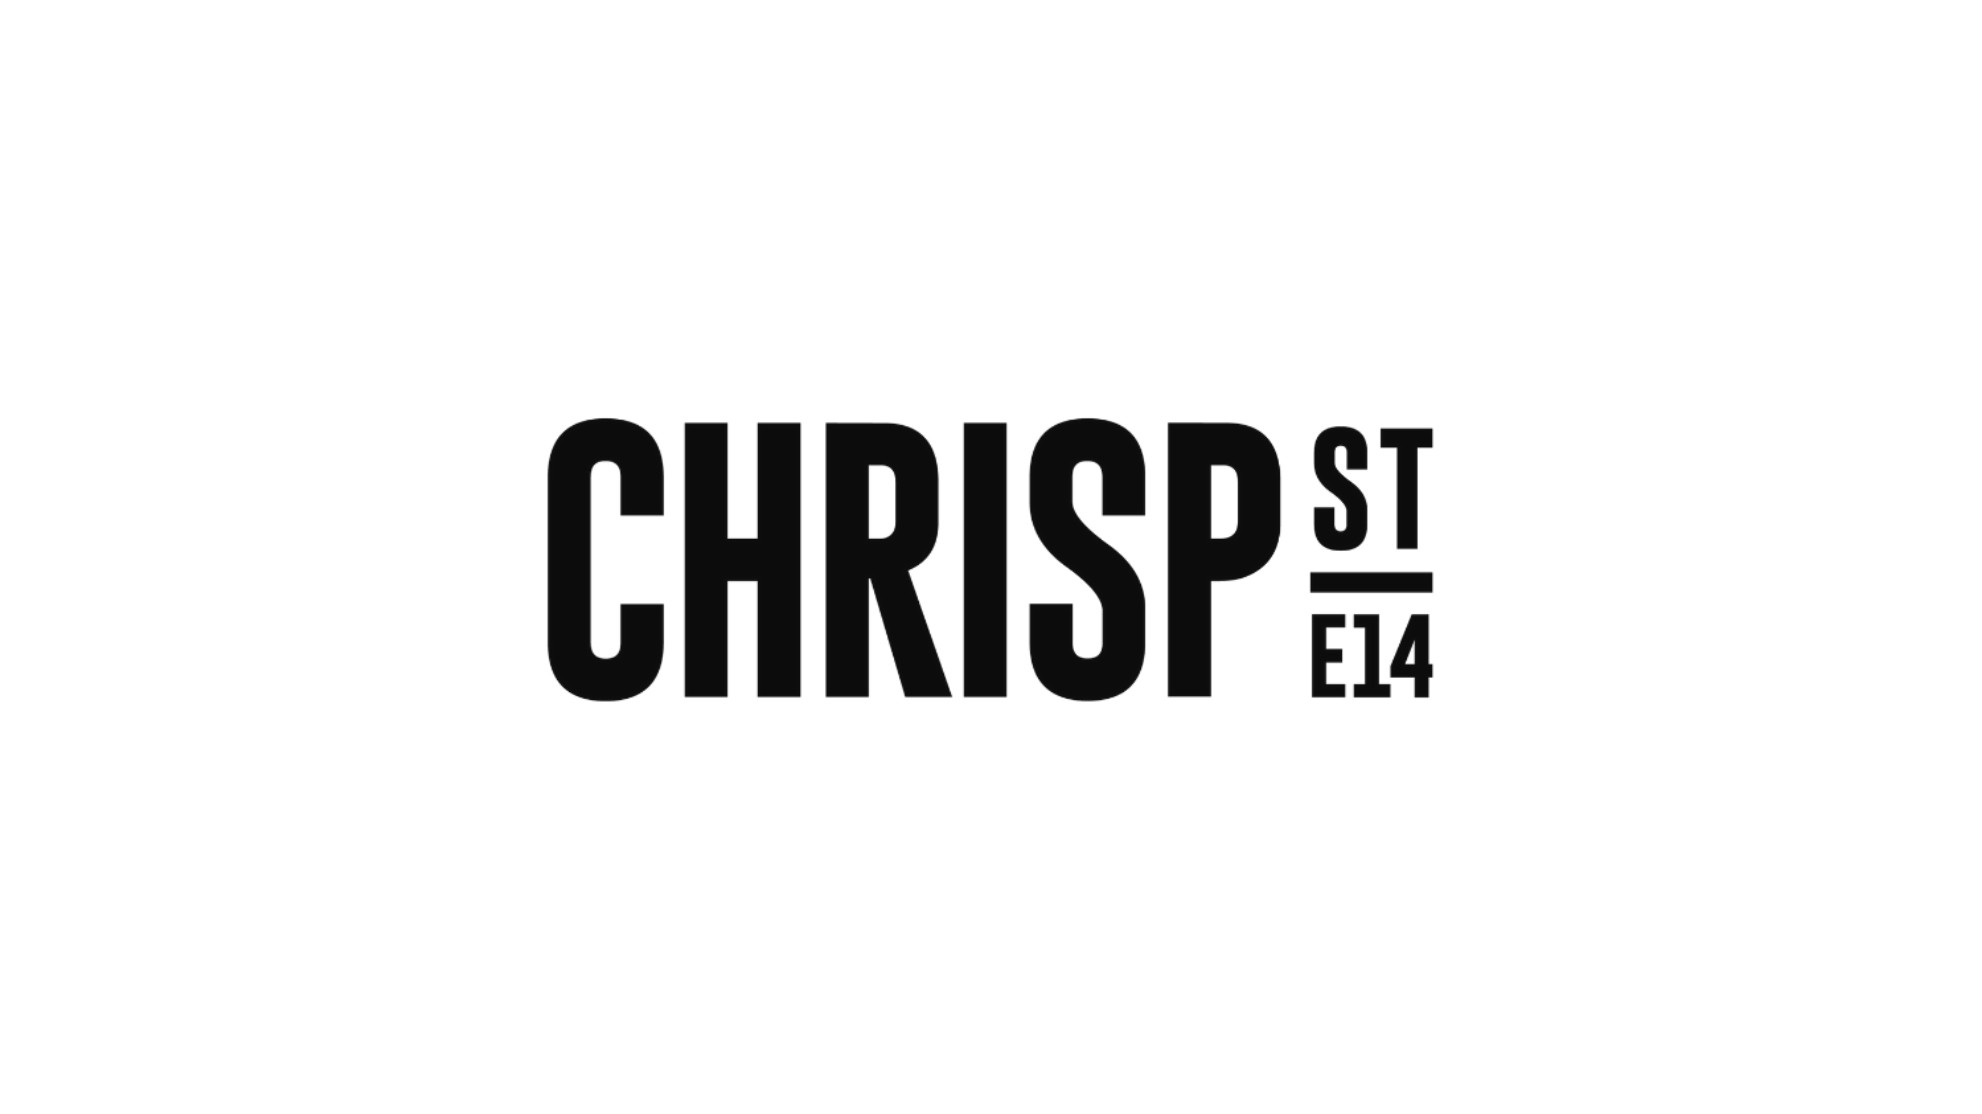 Chrisp Street regeneration